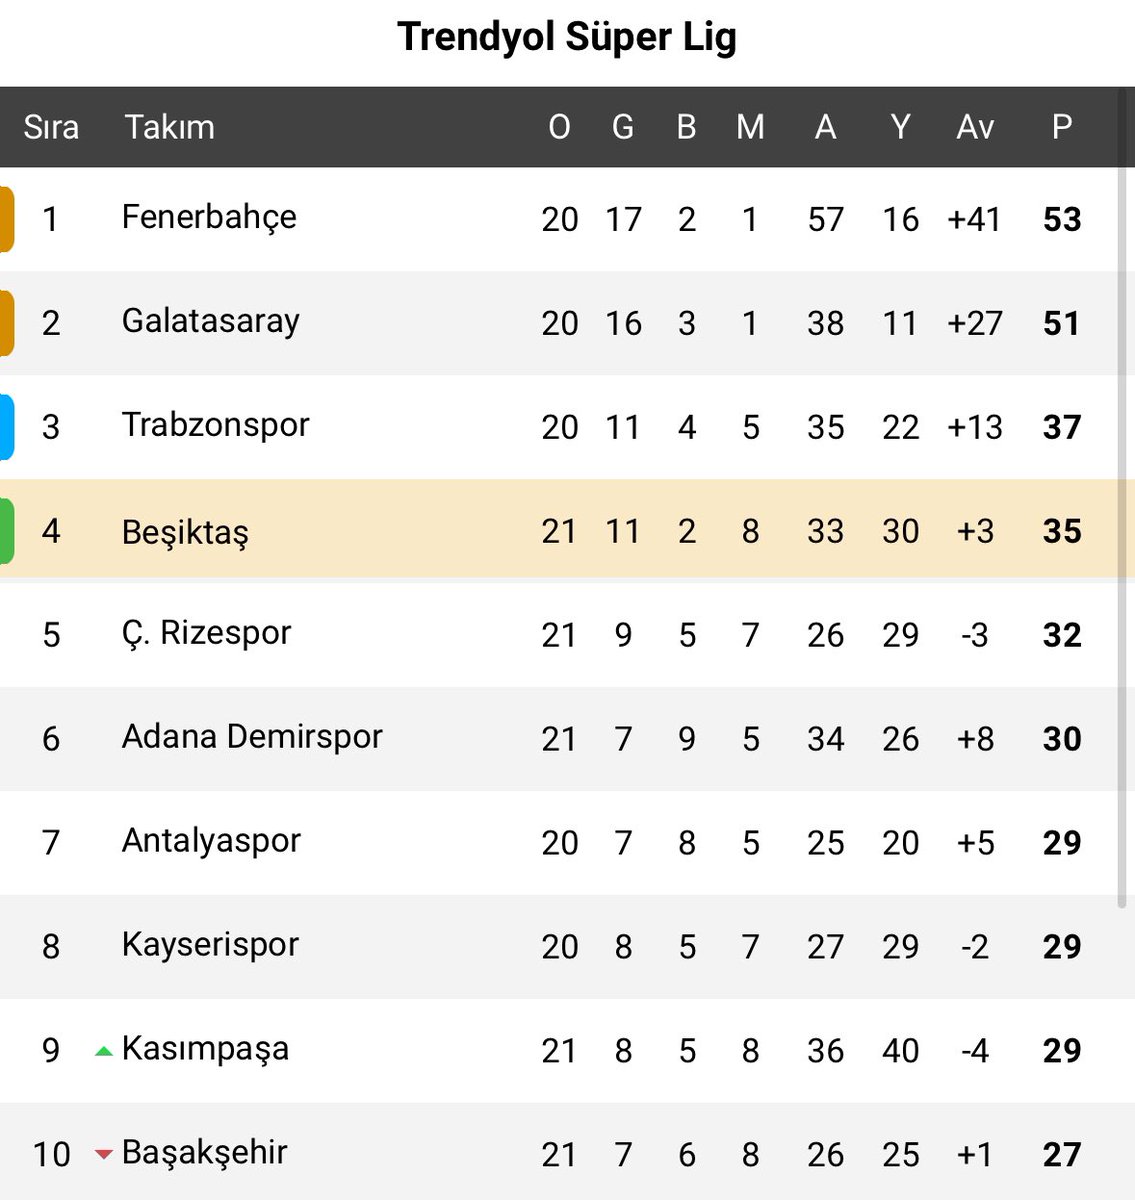 Fenerbahçe ve Galatasaray toplam 26 gol yedi, Beşiktaş 30 gol yedi. Her ikisi toplam 7 maçta puan kaybetti, Beşiktaş tek başına 10 maçta puan kaybetti. Beşiktaş, ezeli rakiplerinin çok gerisinde kaldı.